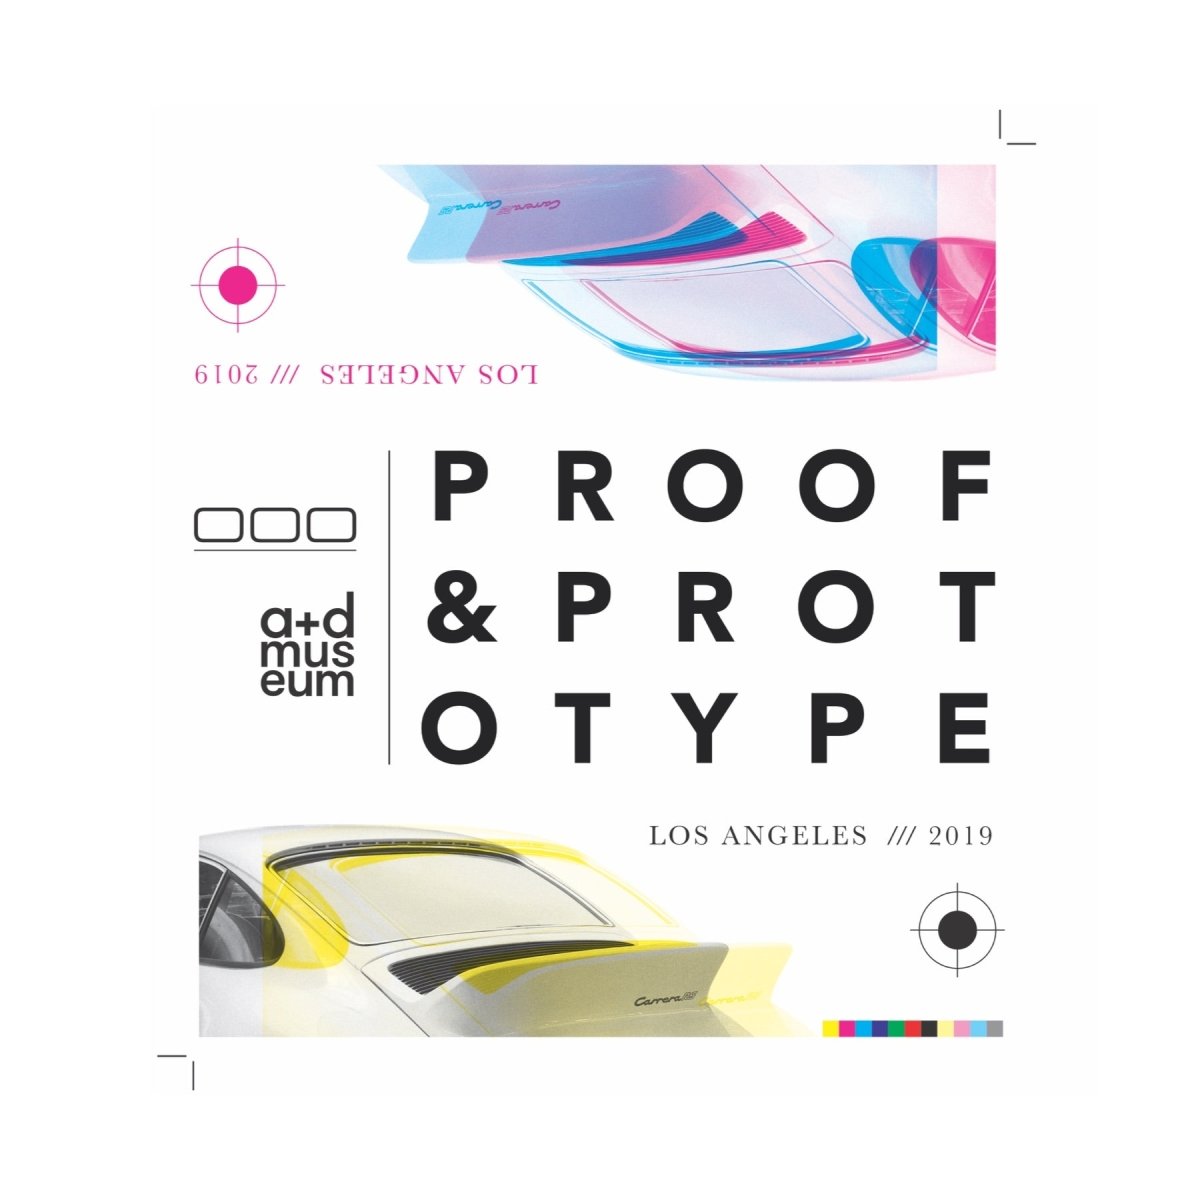 000 Proof & Prototype Print - Autotype Prints